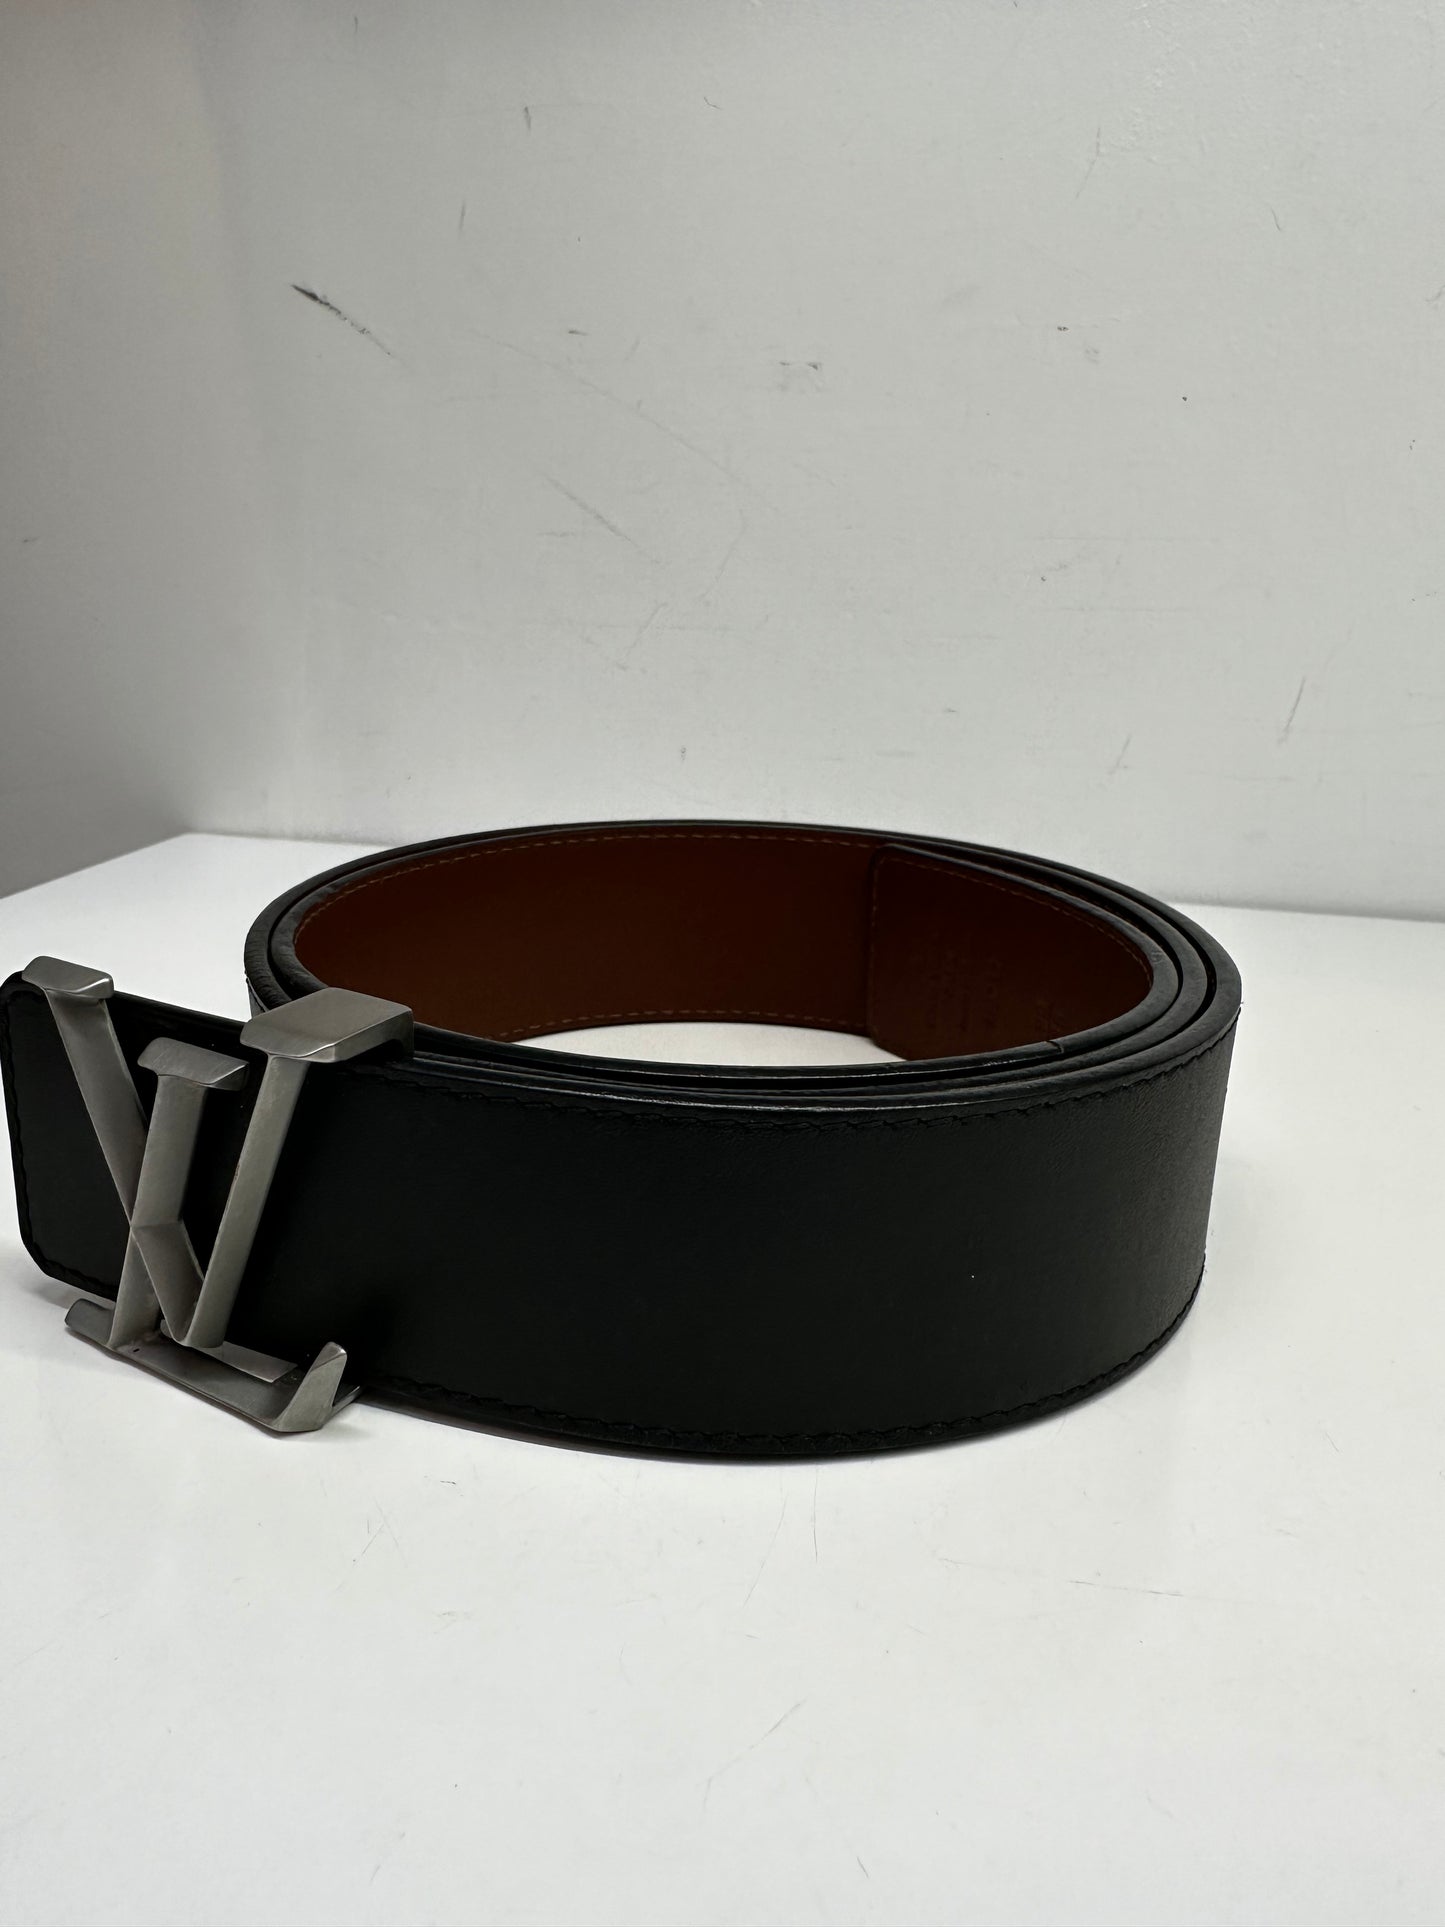 Louis Vuitton Black Leather Belt sz 90